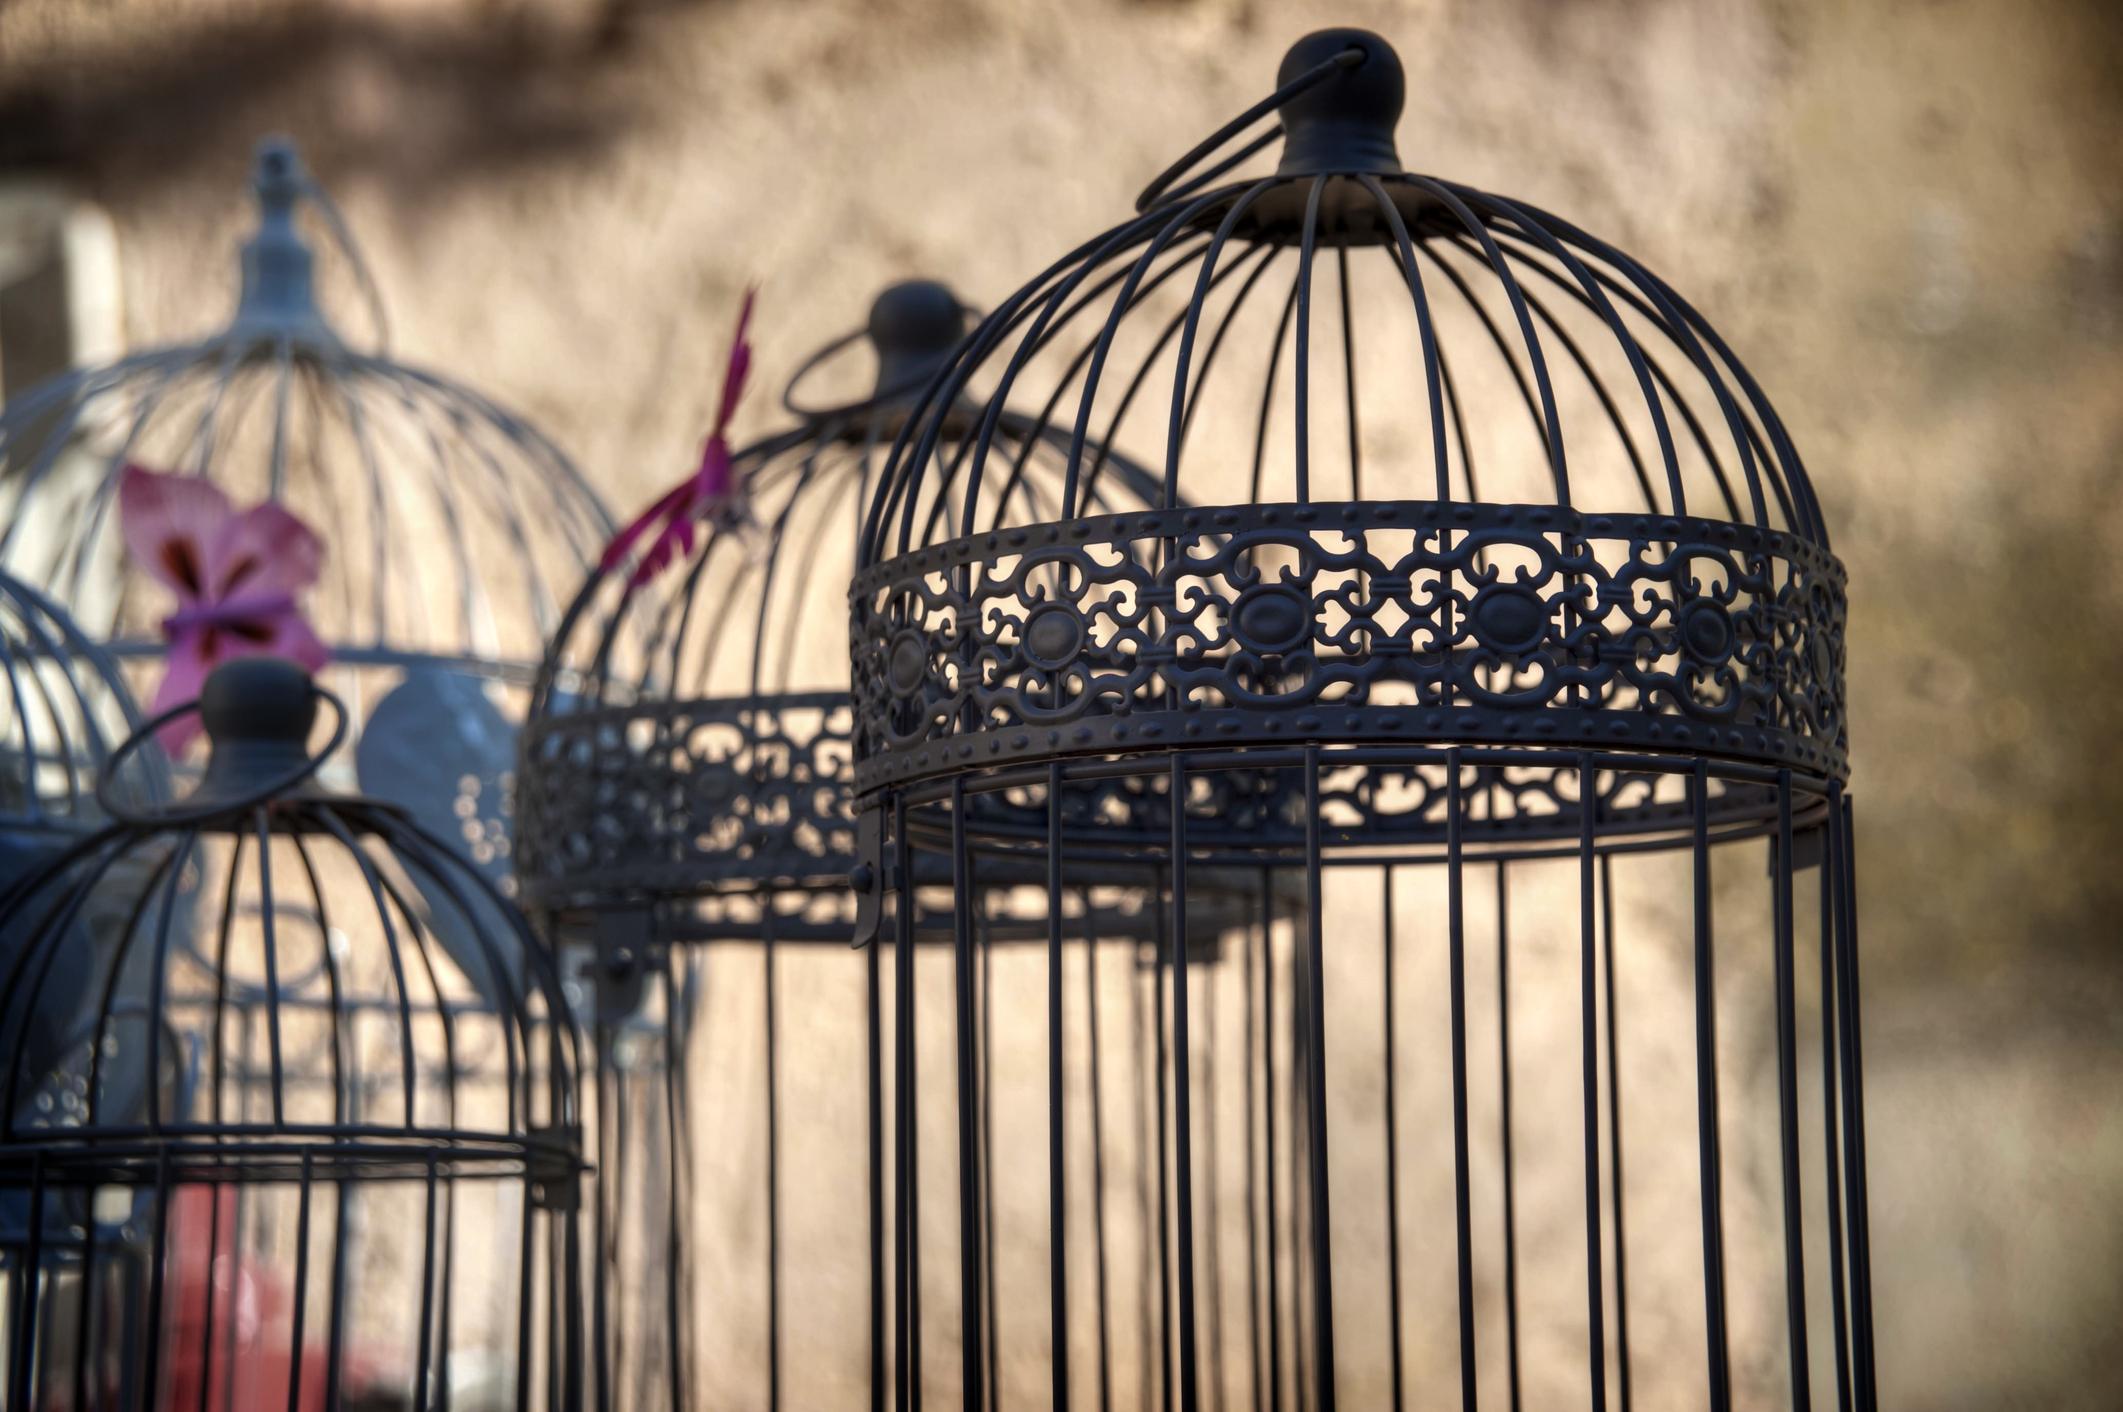 Vintage bird cages